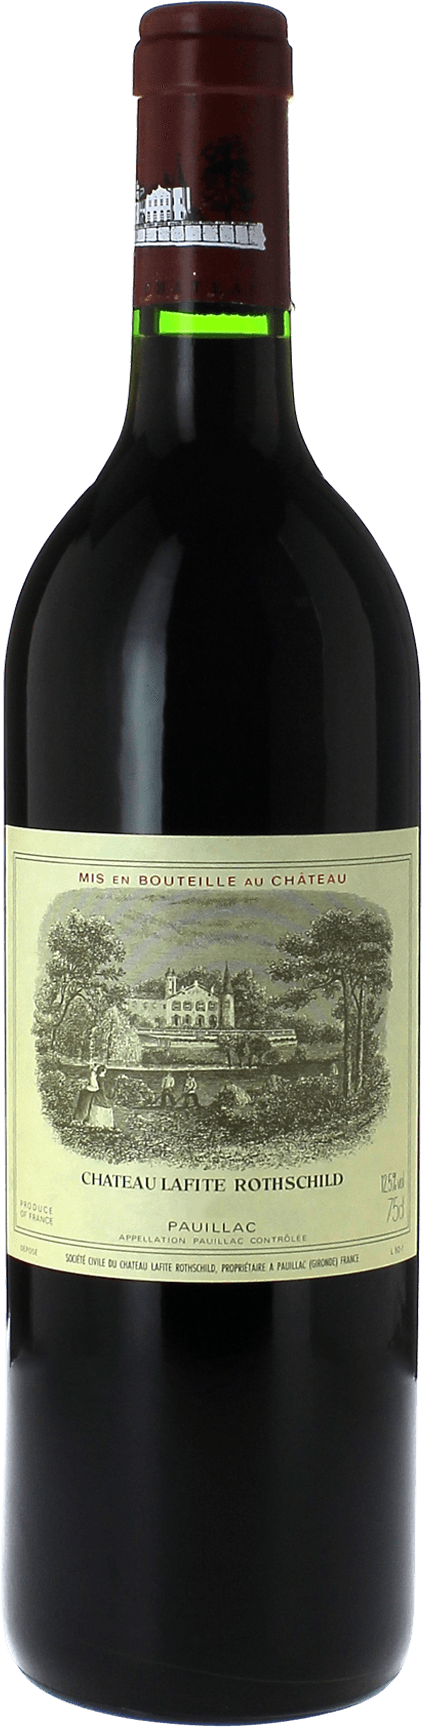 Lafite rothschild 1996 1er Grand cru class Pauillac, Bordeaux rouge